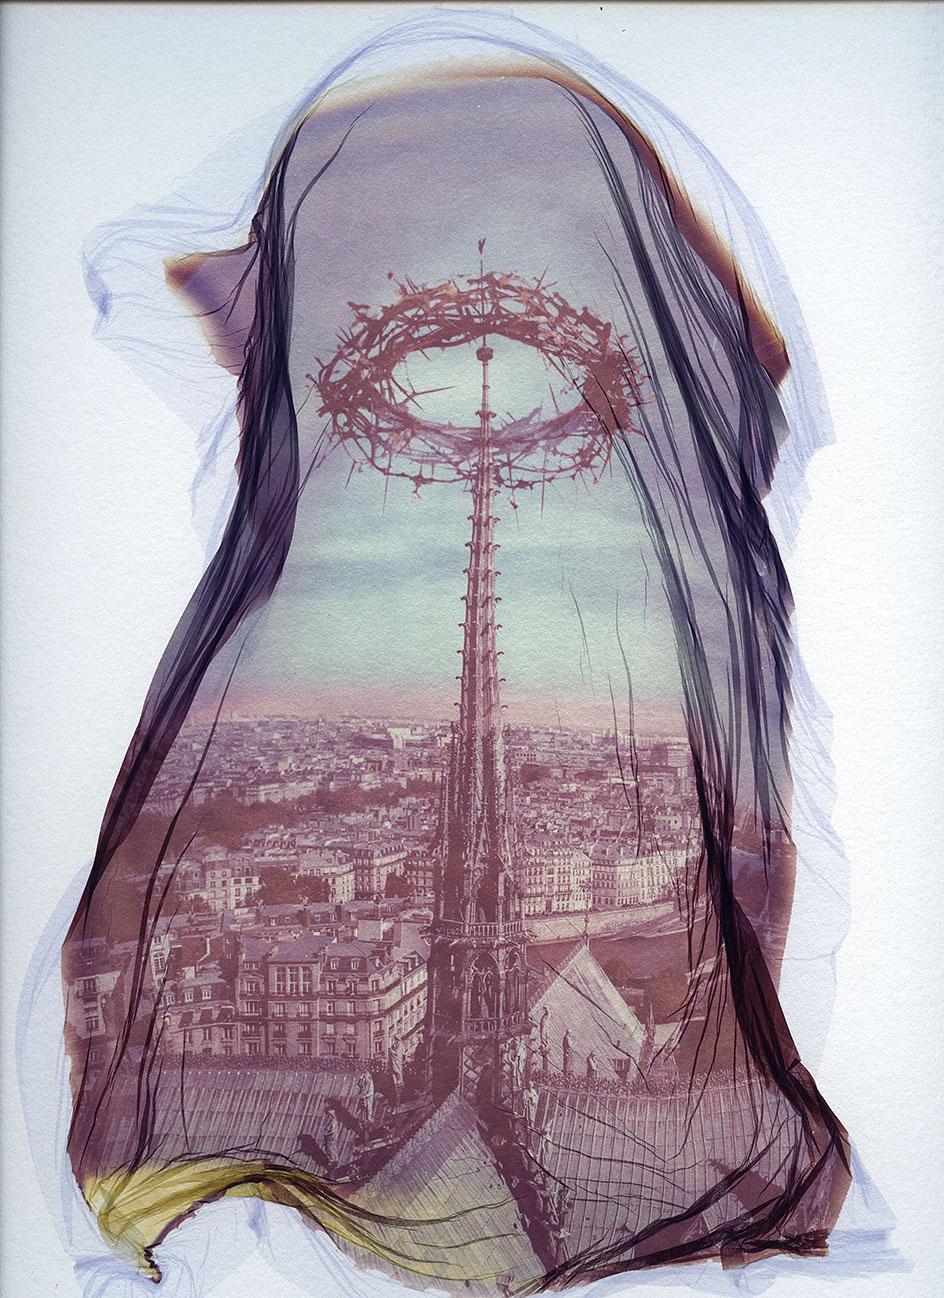 Landscape Photograph xulong zhang - Notre Dame 3 - Contemporain, 21e Siècle, Polaroid, Paris, Icons